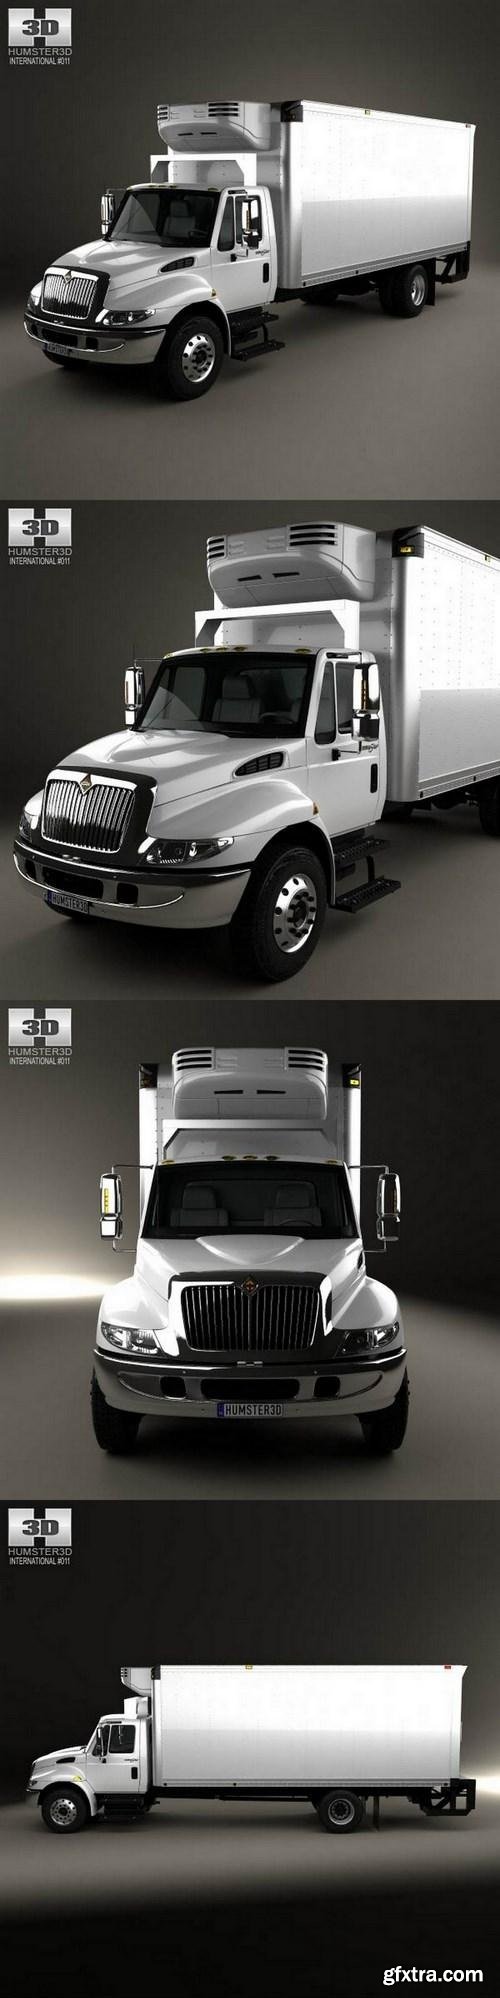 International Durastar Box Truck 2002 3D Model